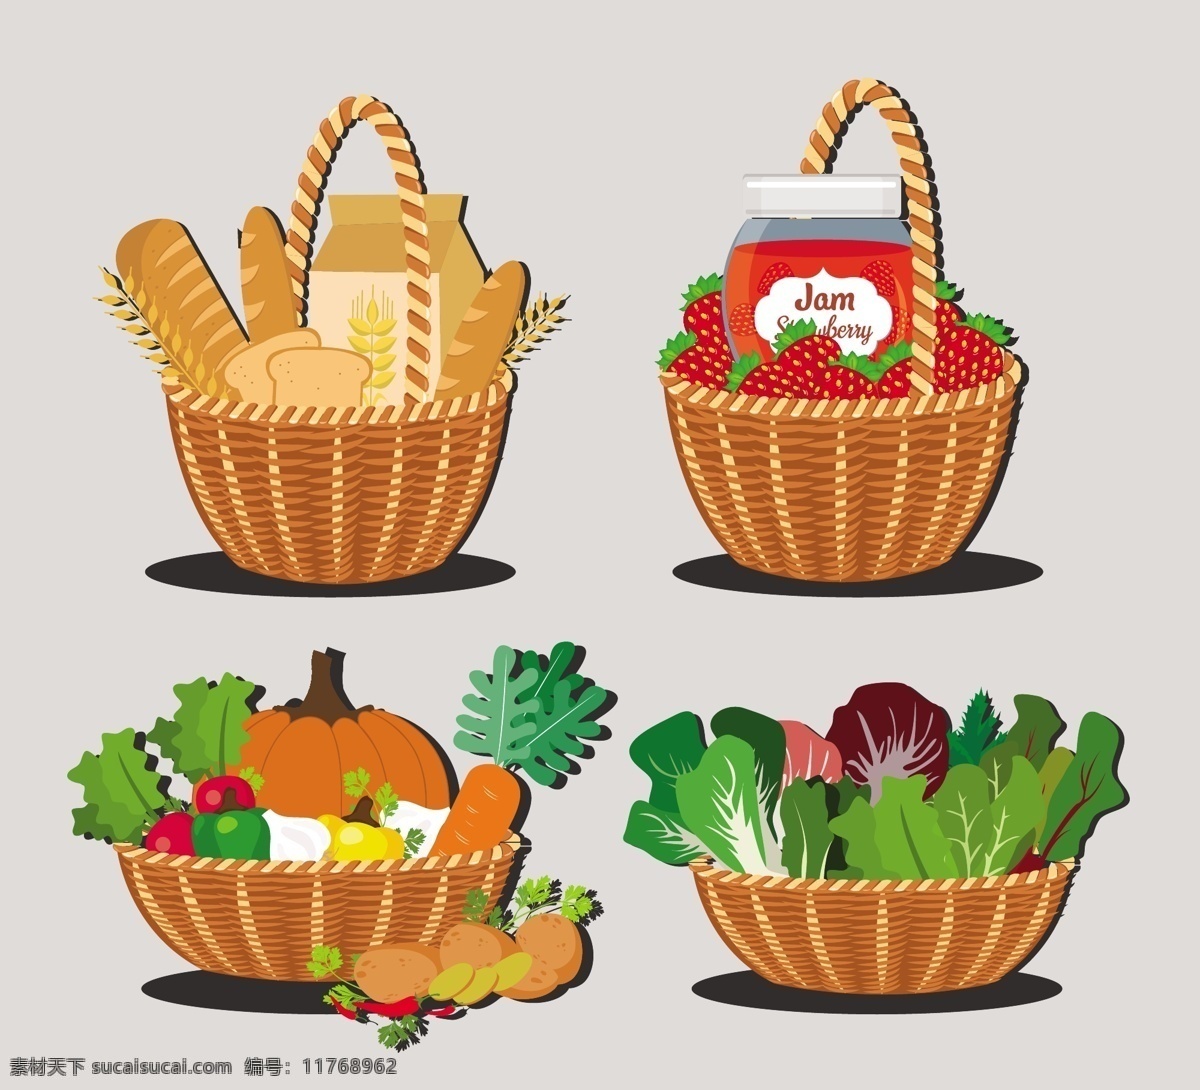 蔬菜 篮子 矢量 面包 草莓 南瓜 矢量素材 蔬菜篮子 青菜 西红柿